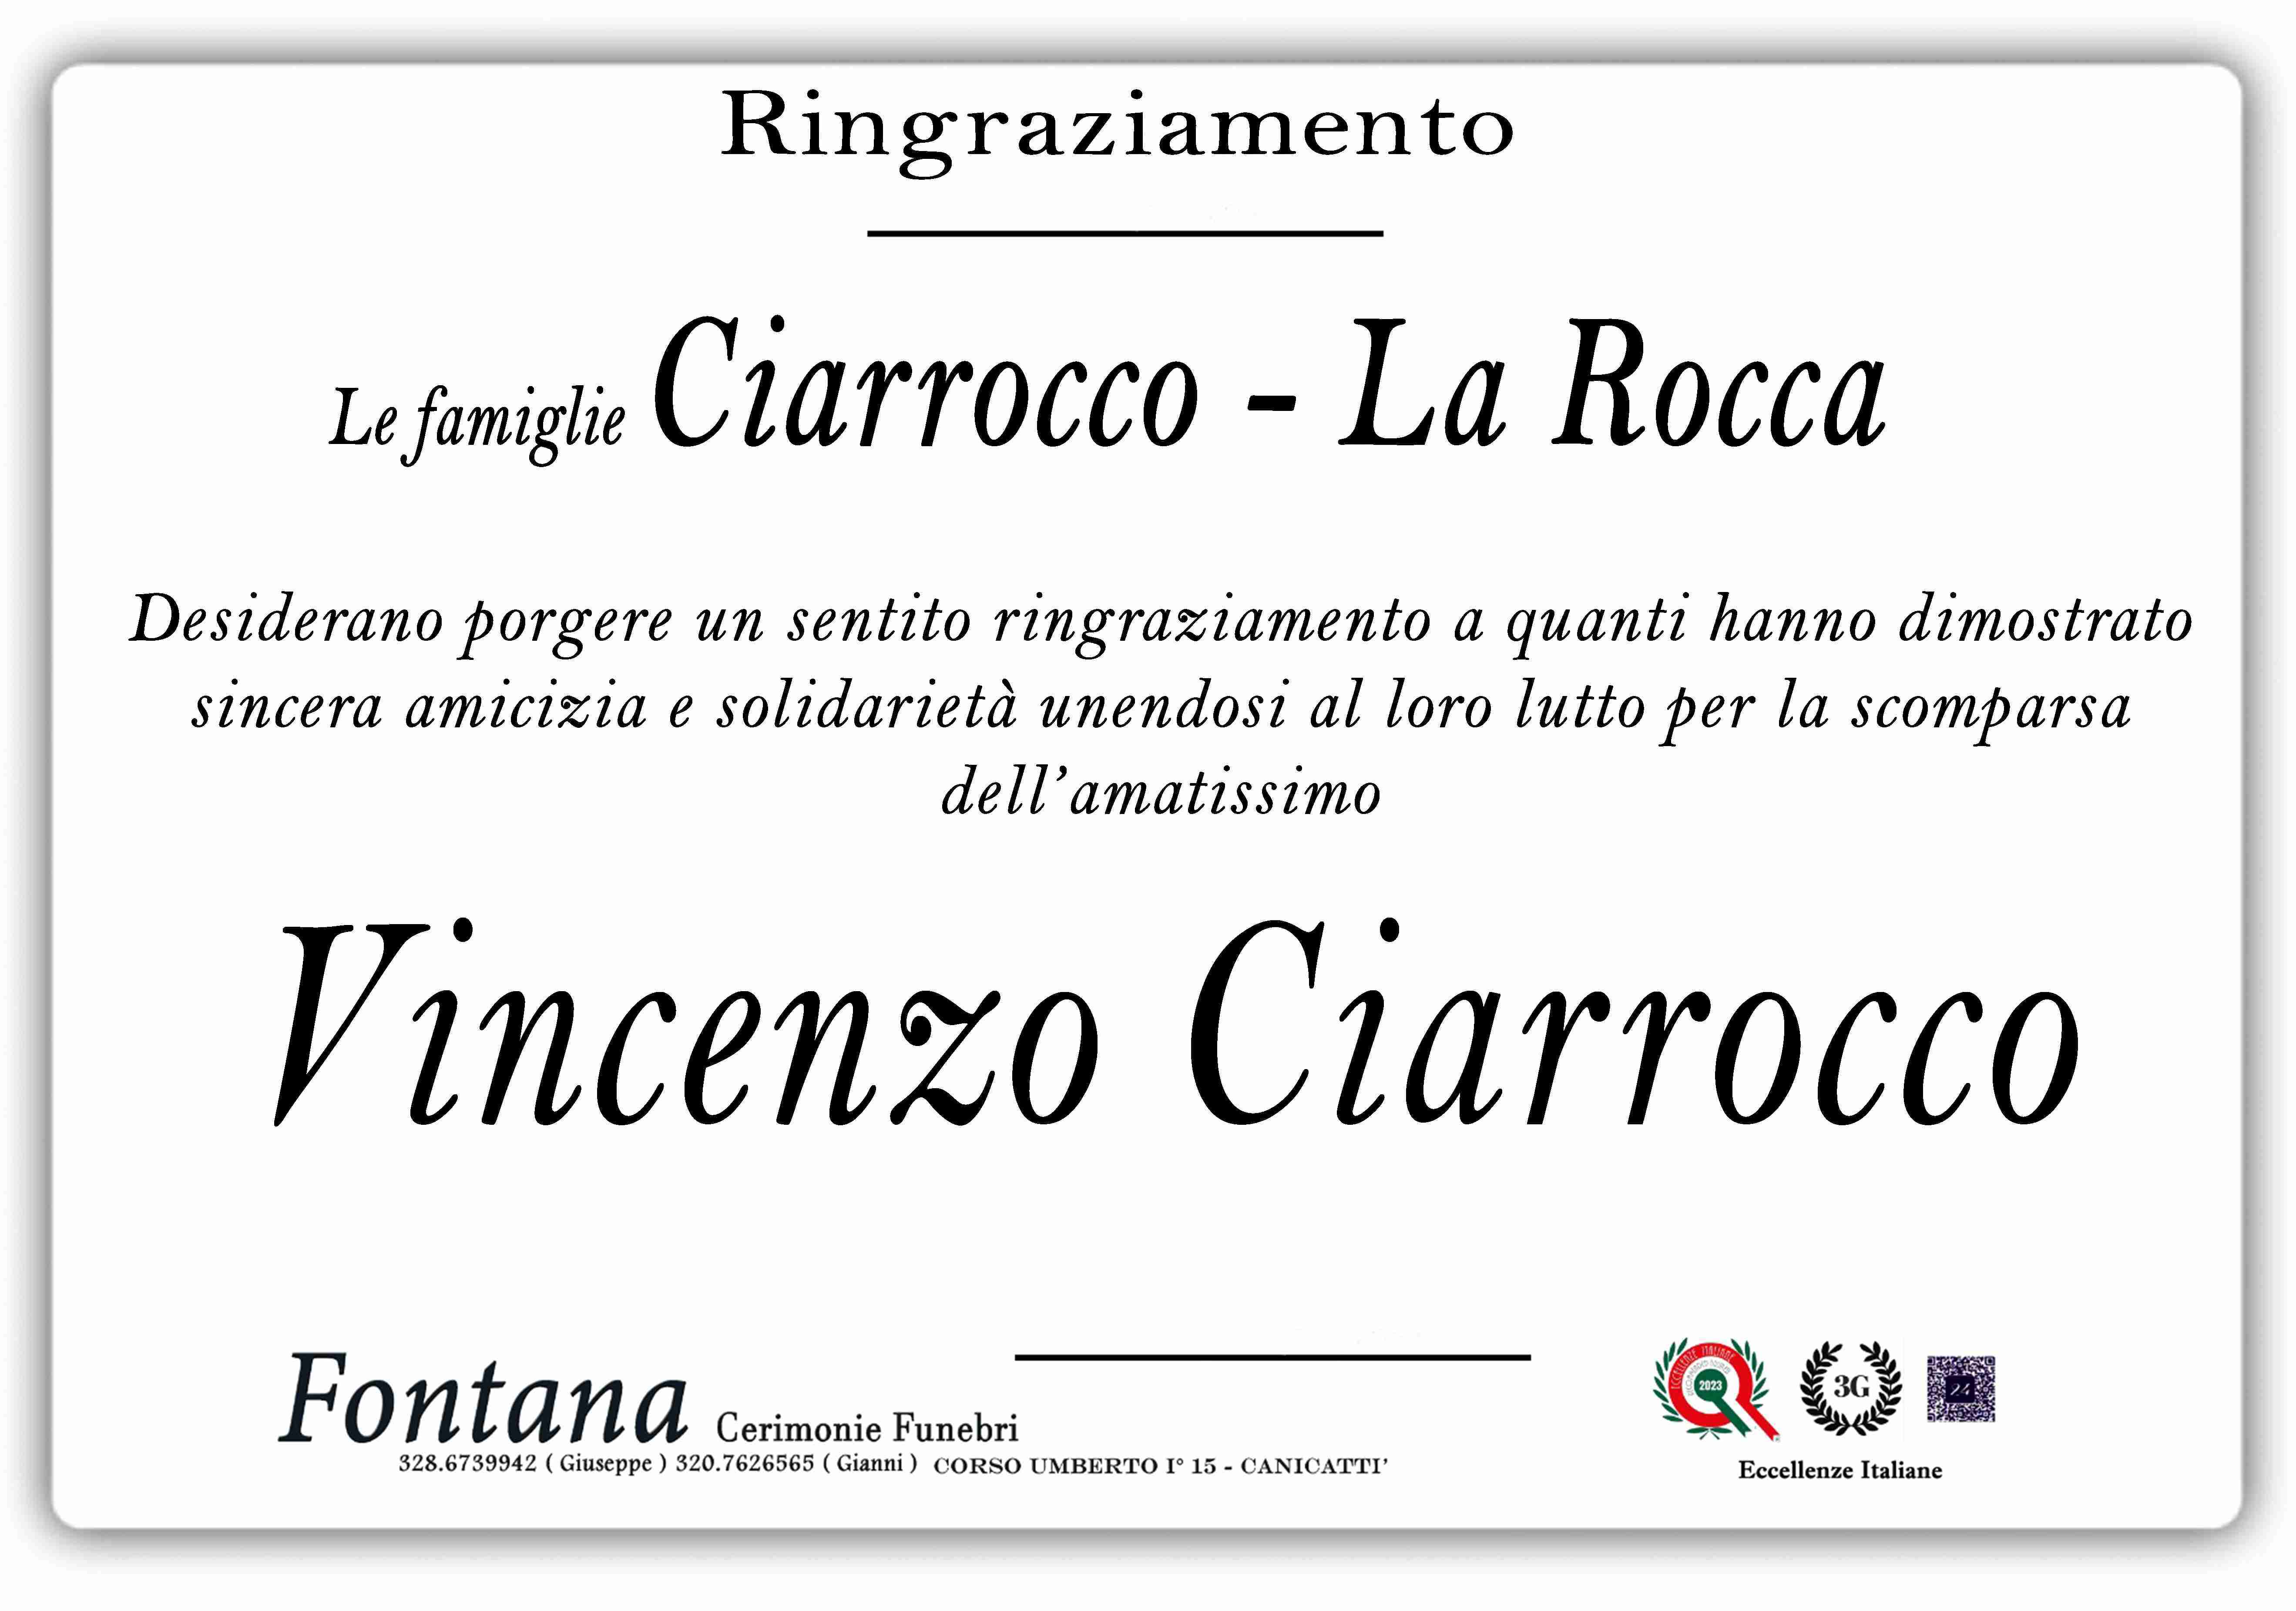 Vincenzo Ciarrocco